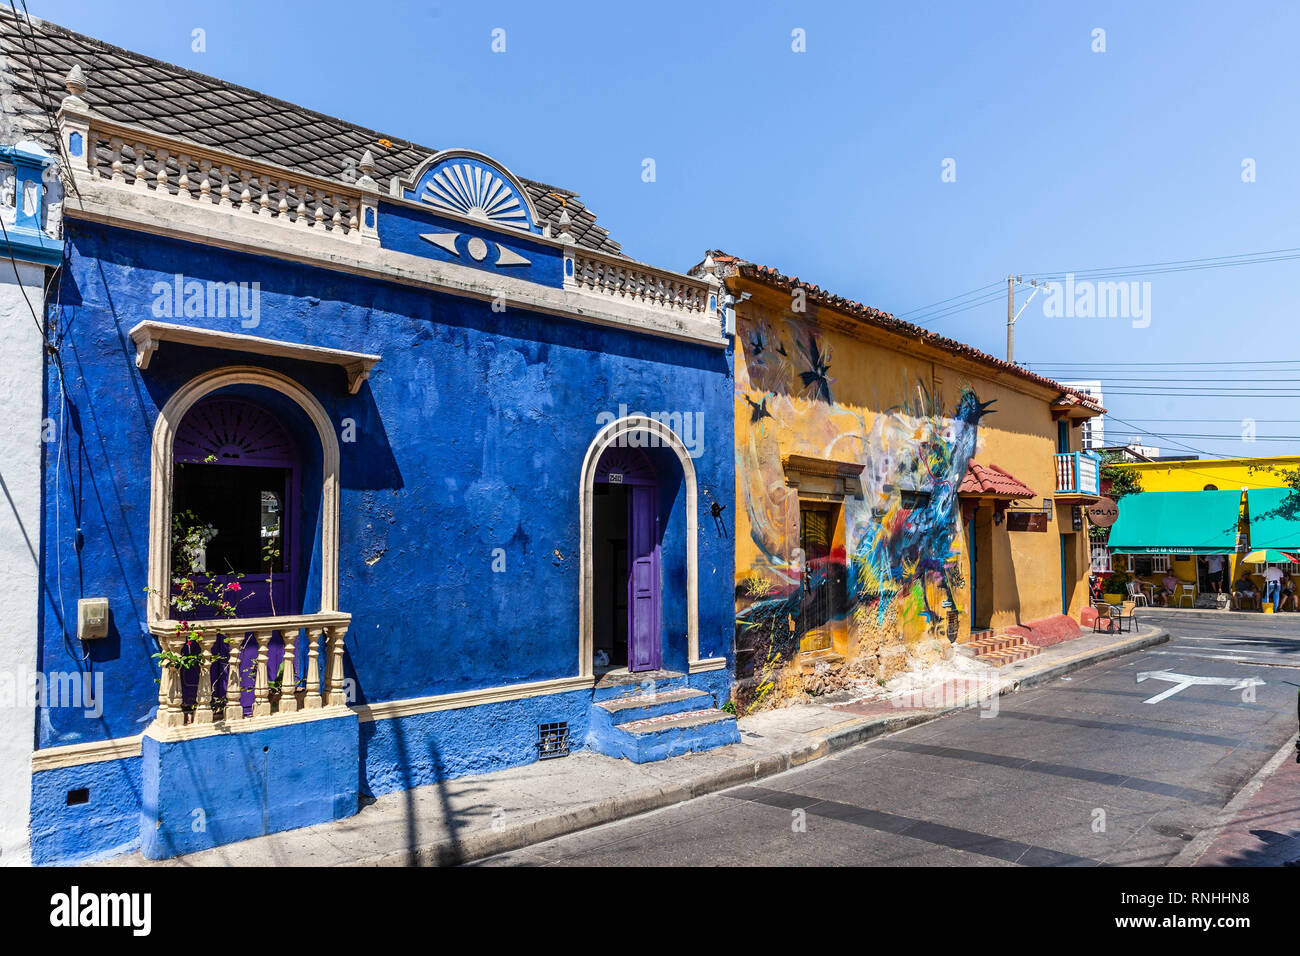 Old houses in Calle de San Antonio, Barrio Getsemaní, Cartagena de Indias, Colombia. Stock Photo